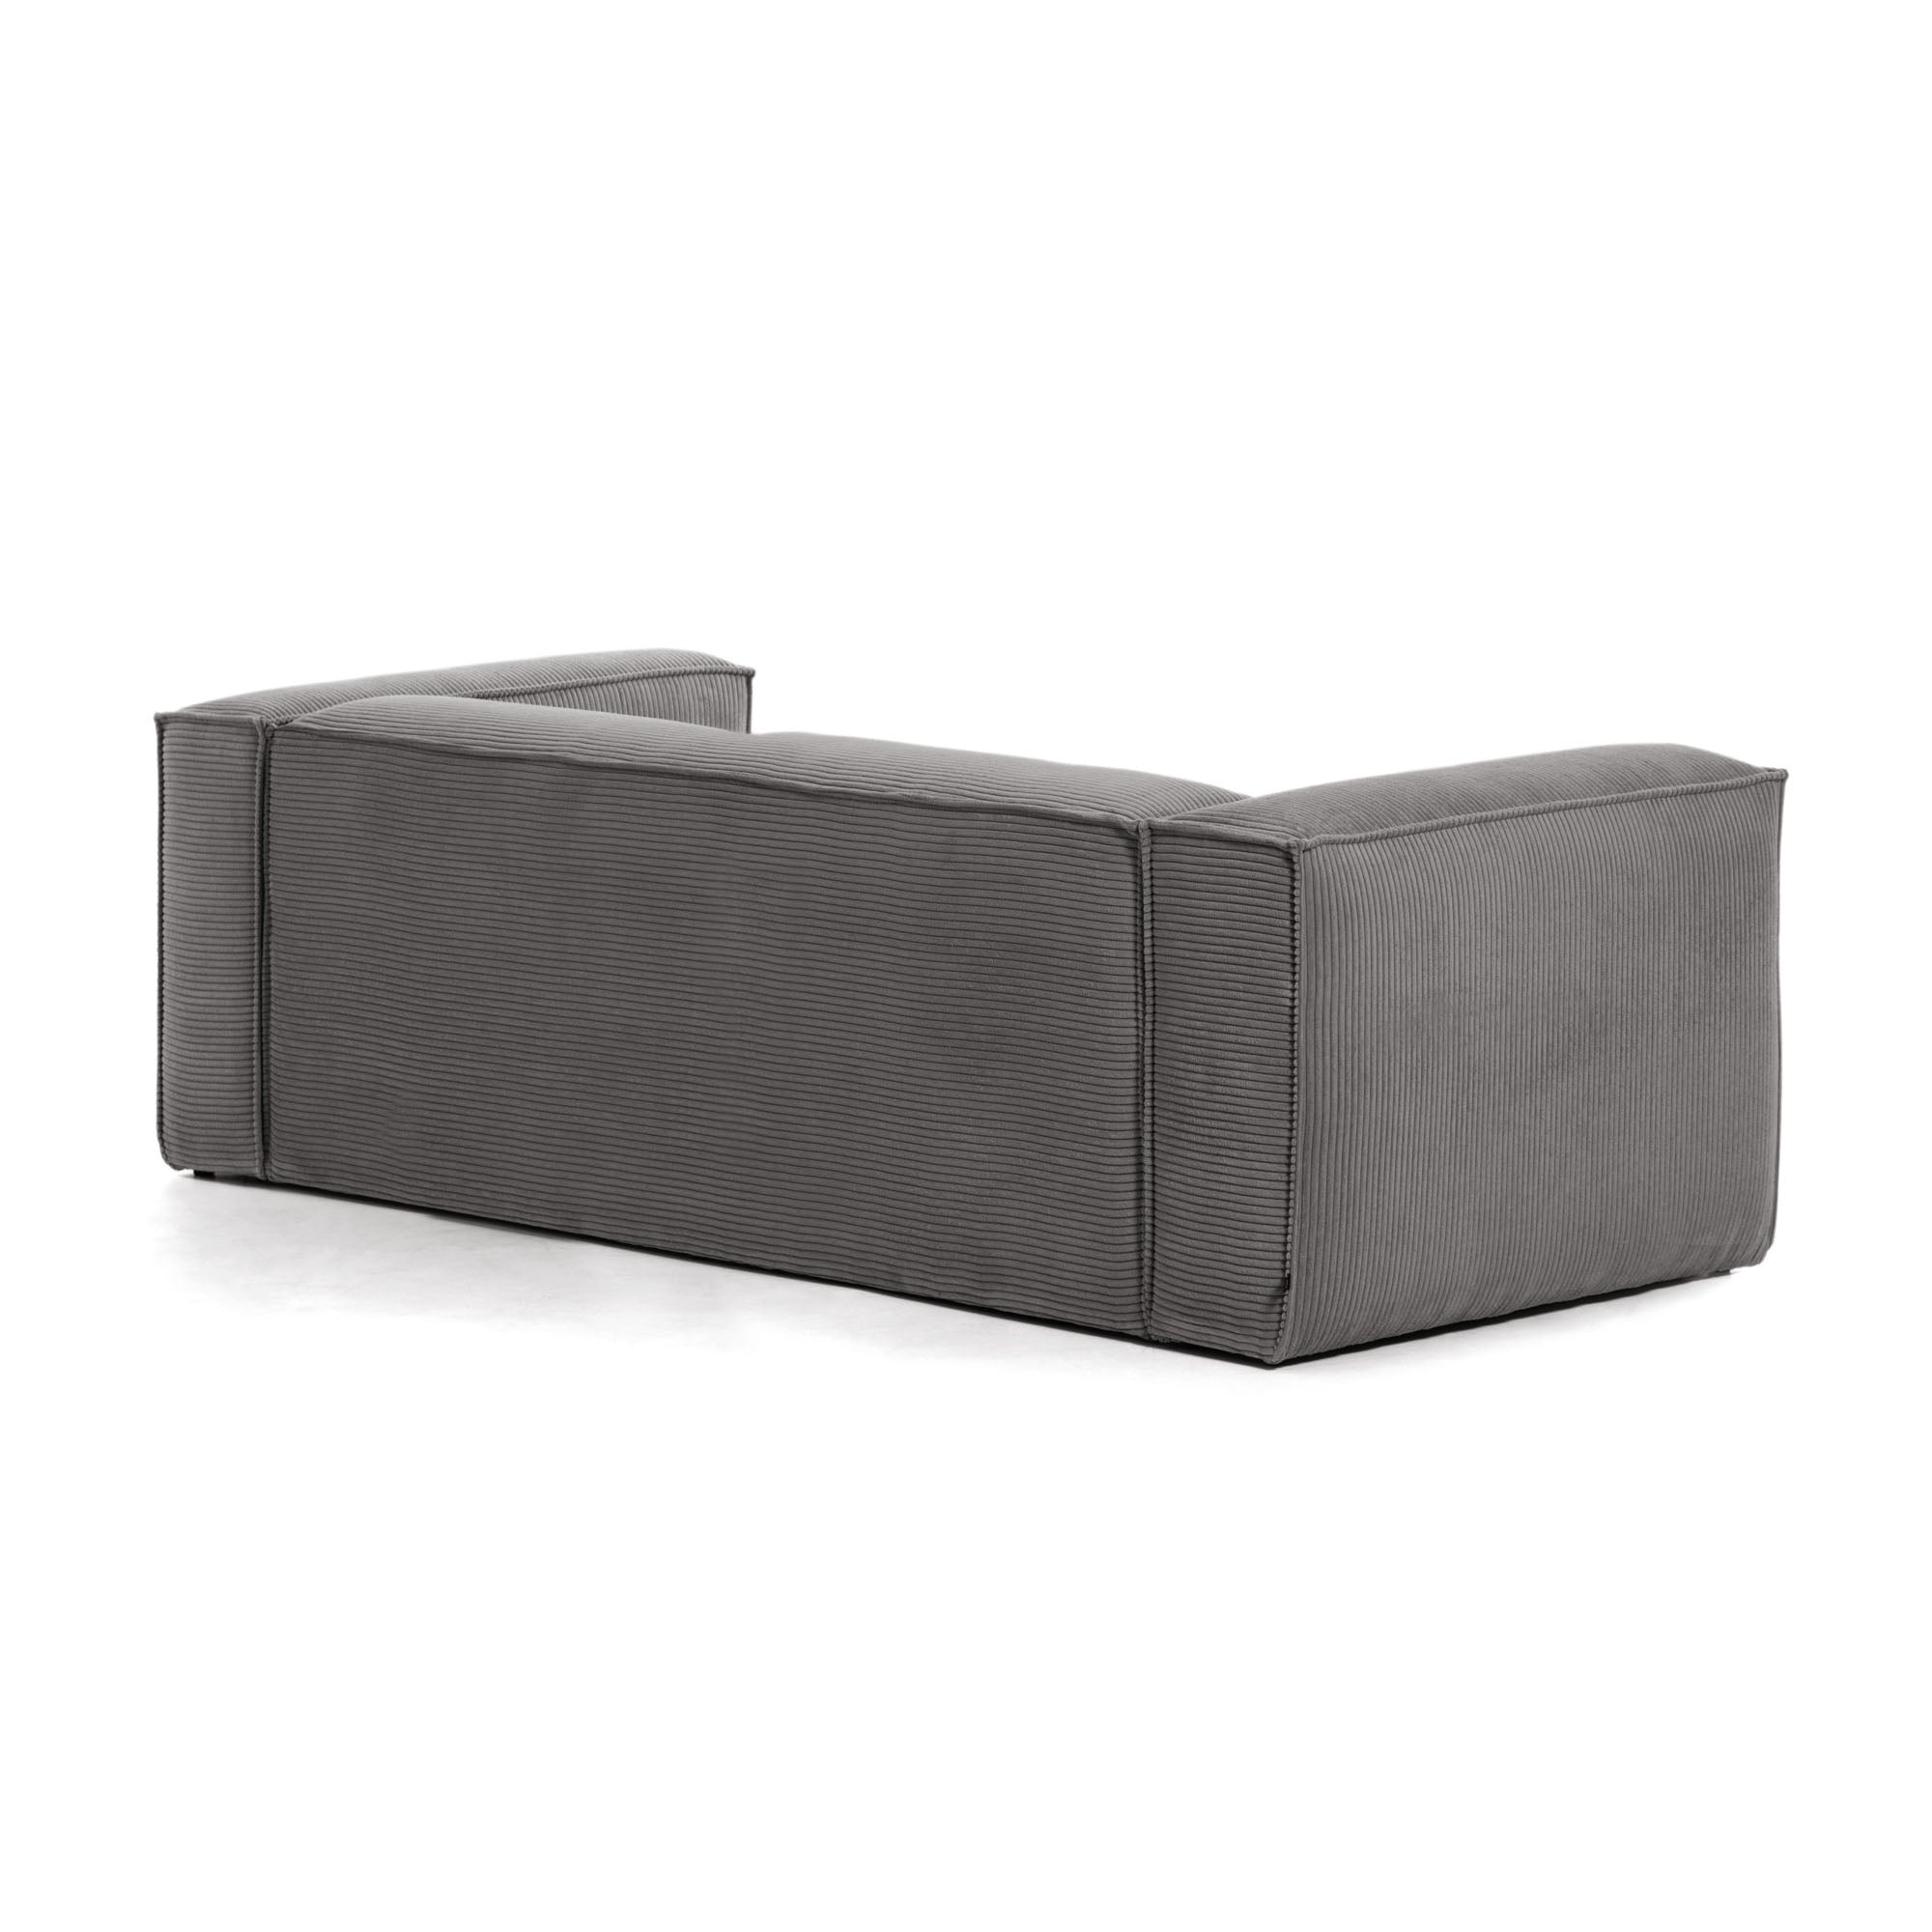 Blok 3 személyes kanapé szürke, széles varrású kordbársonyból, 240 cm